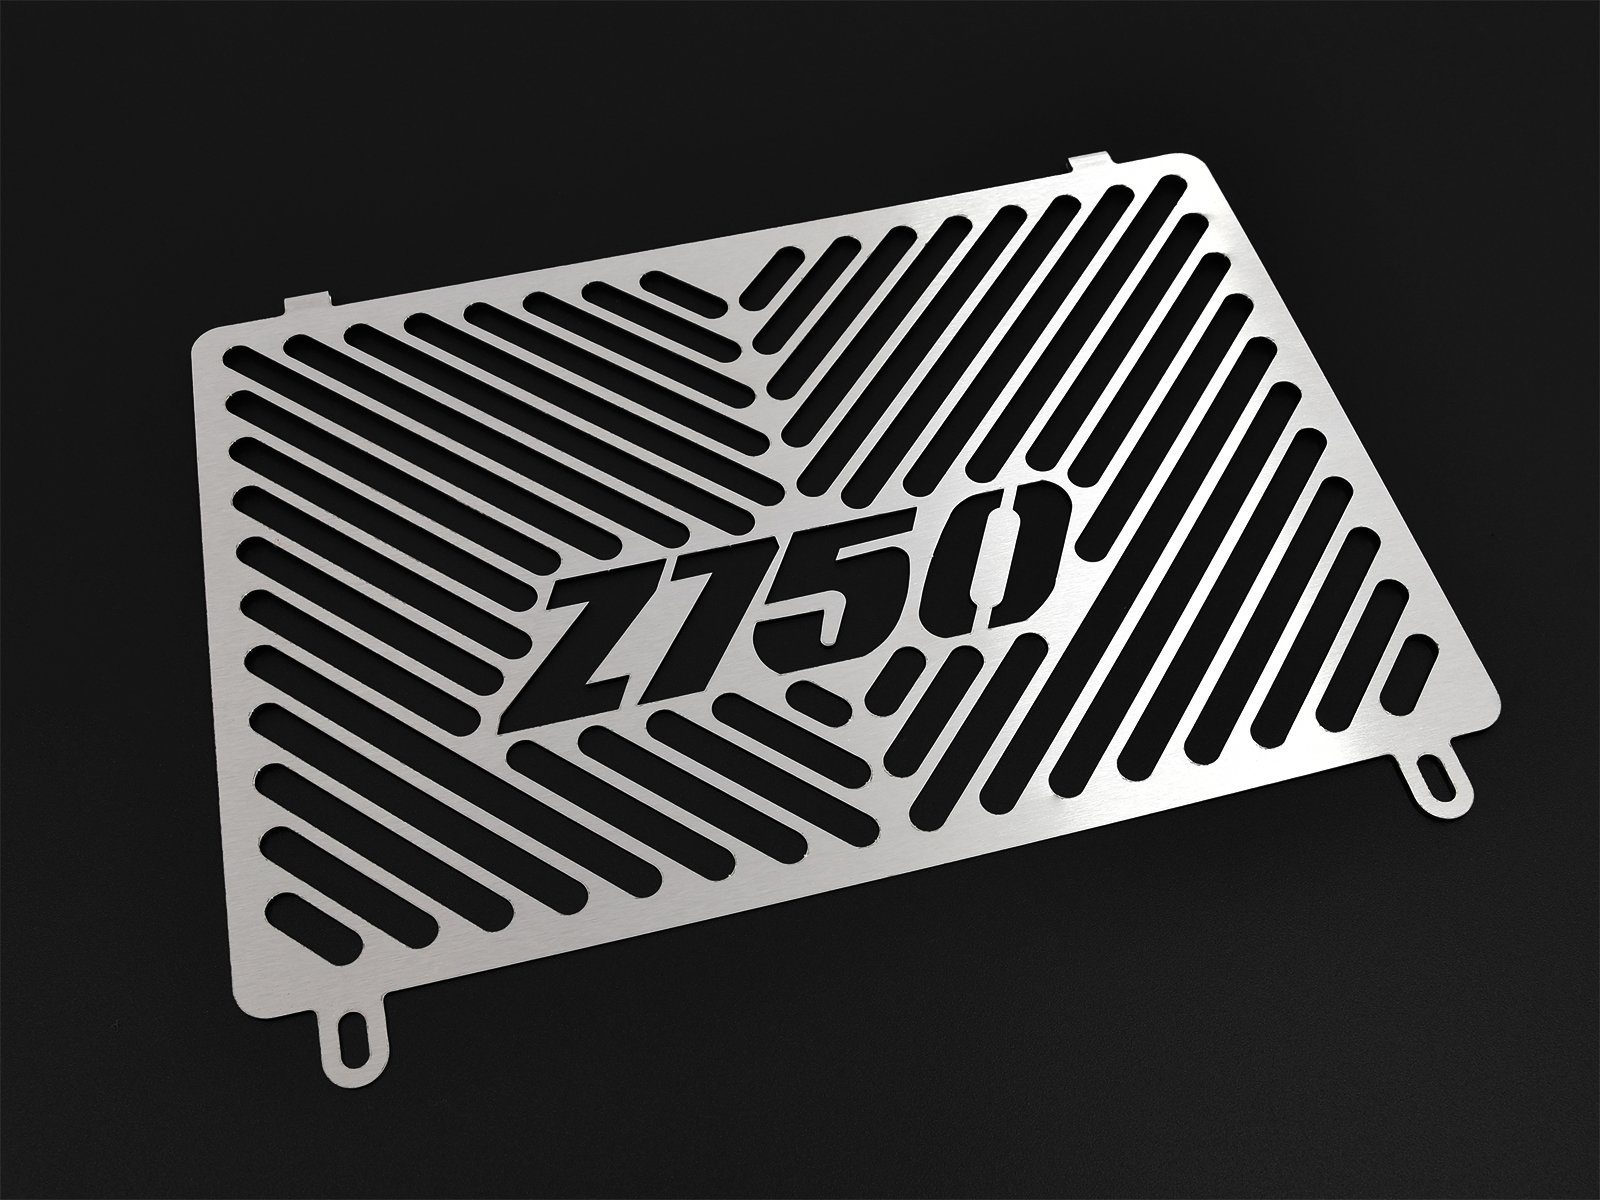 ZIEGER Motorrad-Additiv Kühlerabdeckung kompatibel mit Kawasaki Z750 Logo silber, Motorradkühlerabdeckung